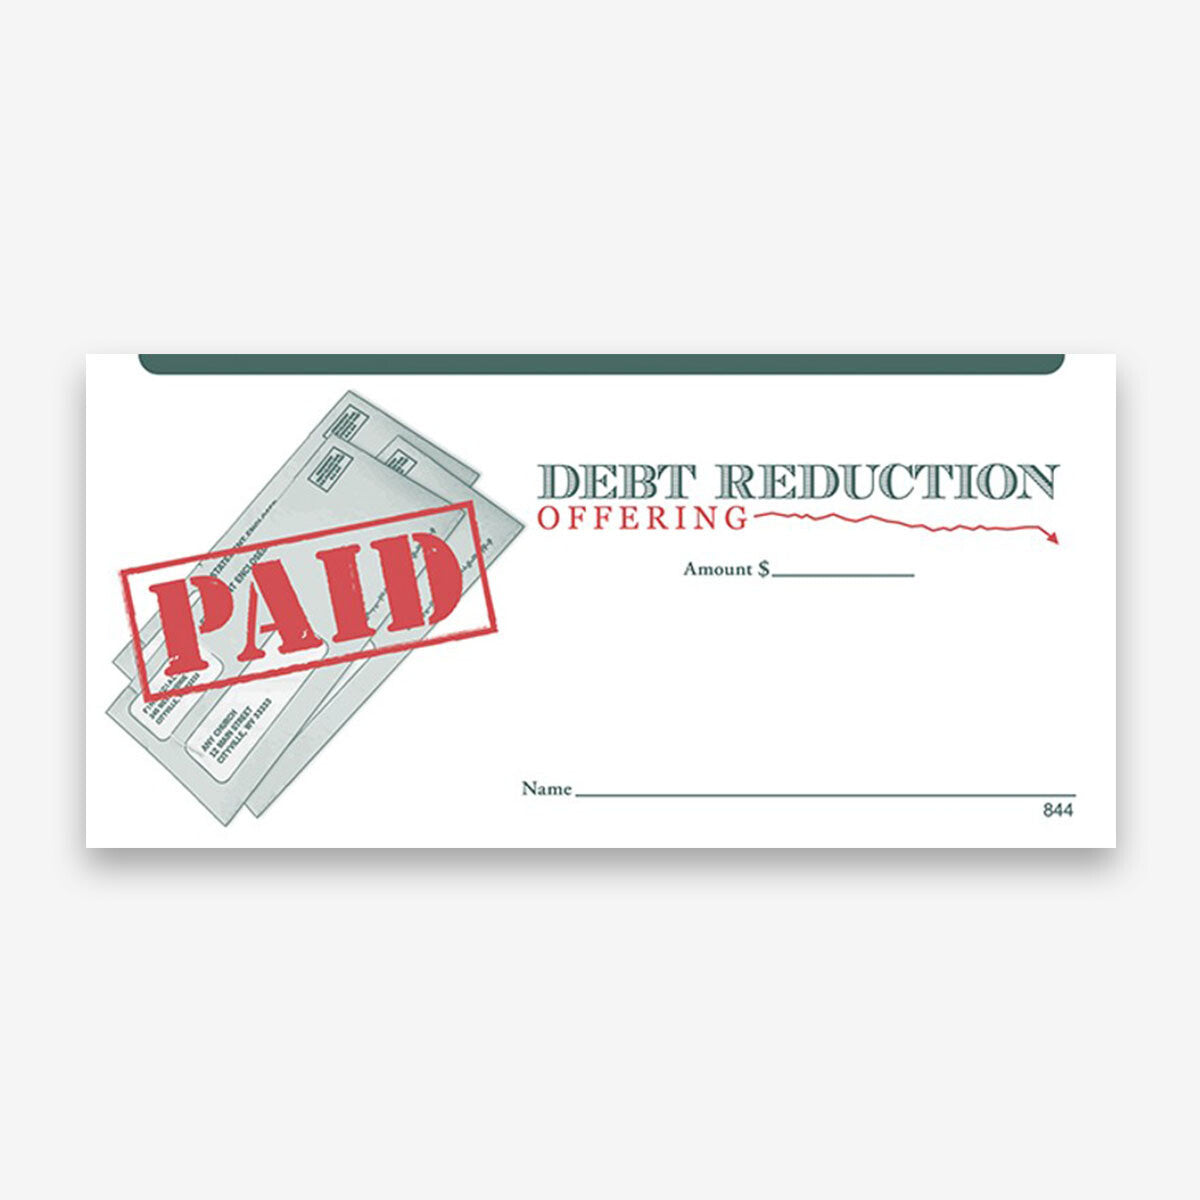 Debt Reduction Offering Envelope